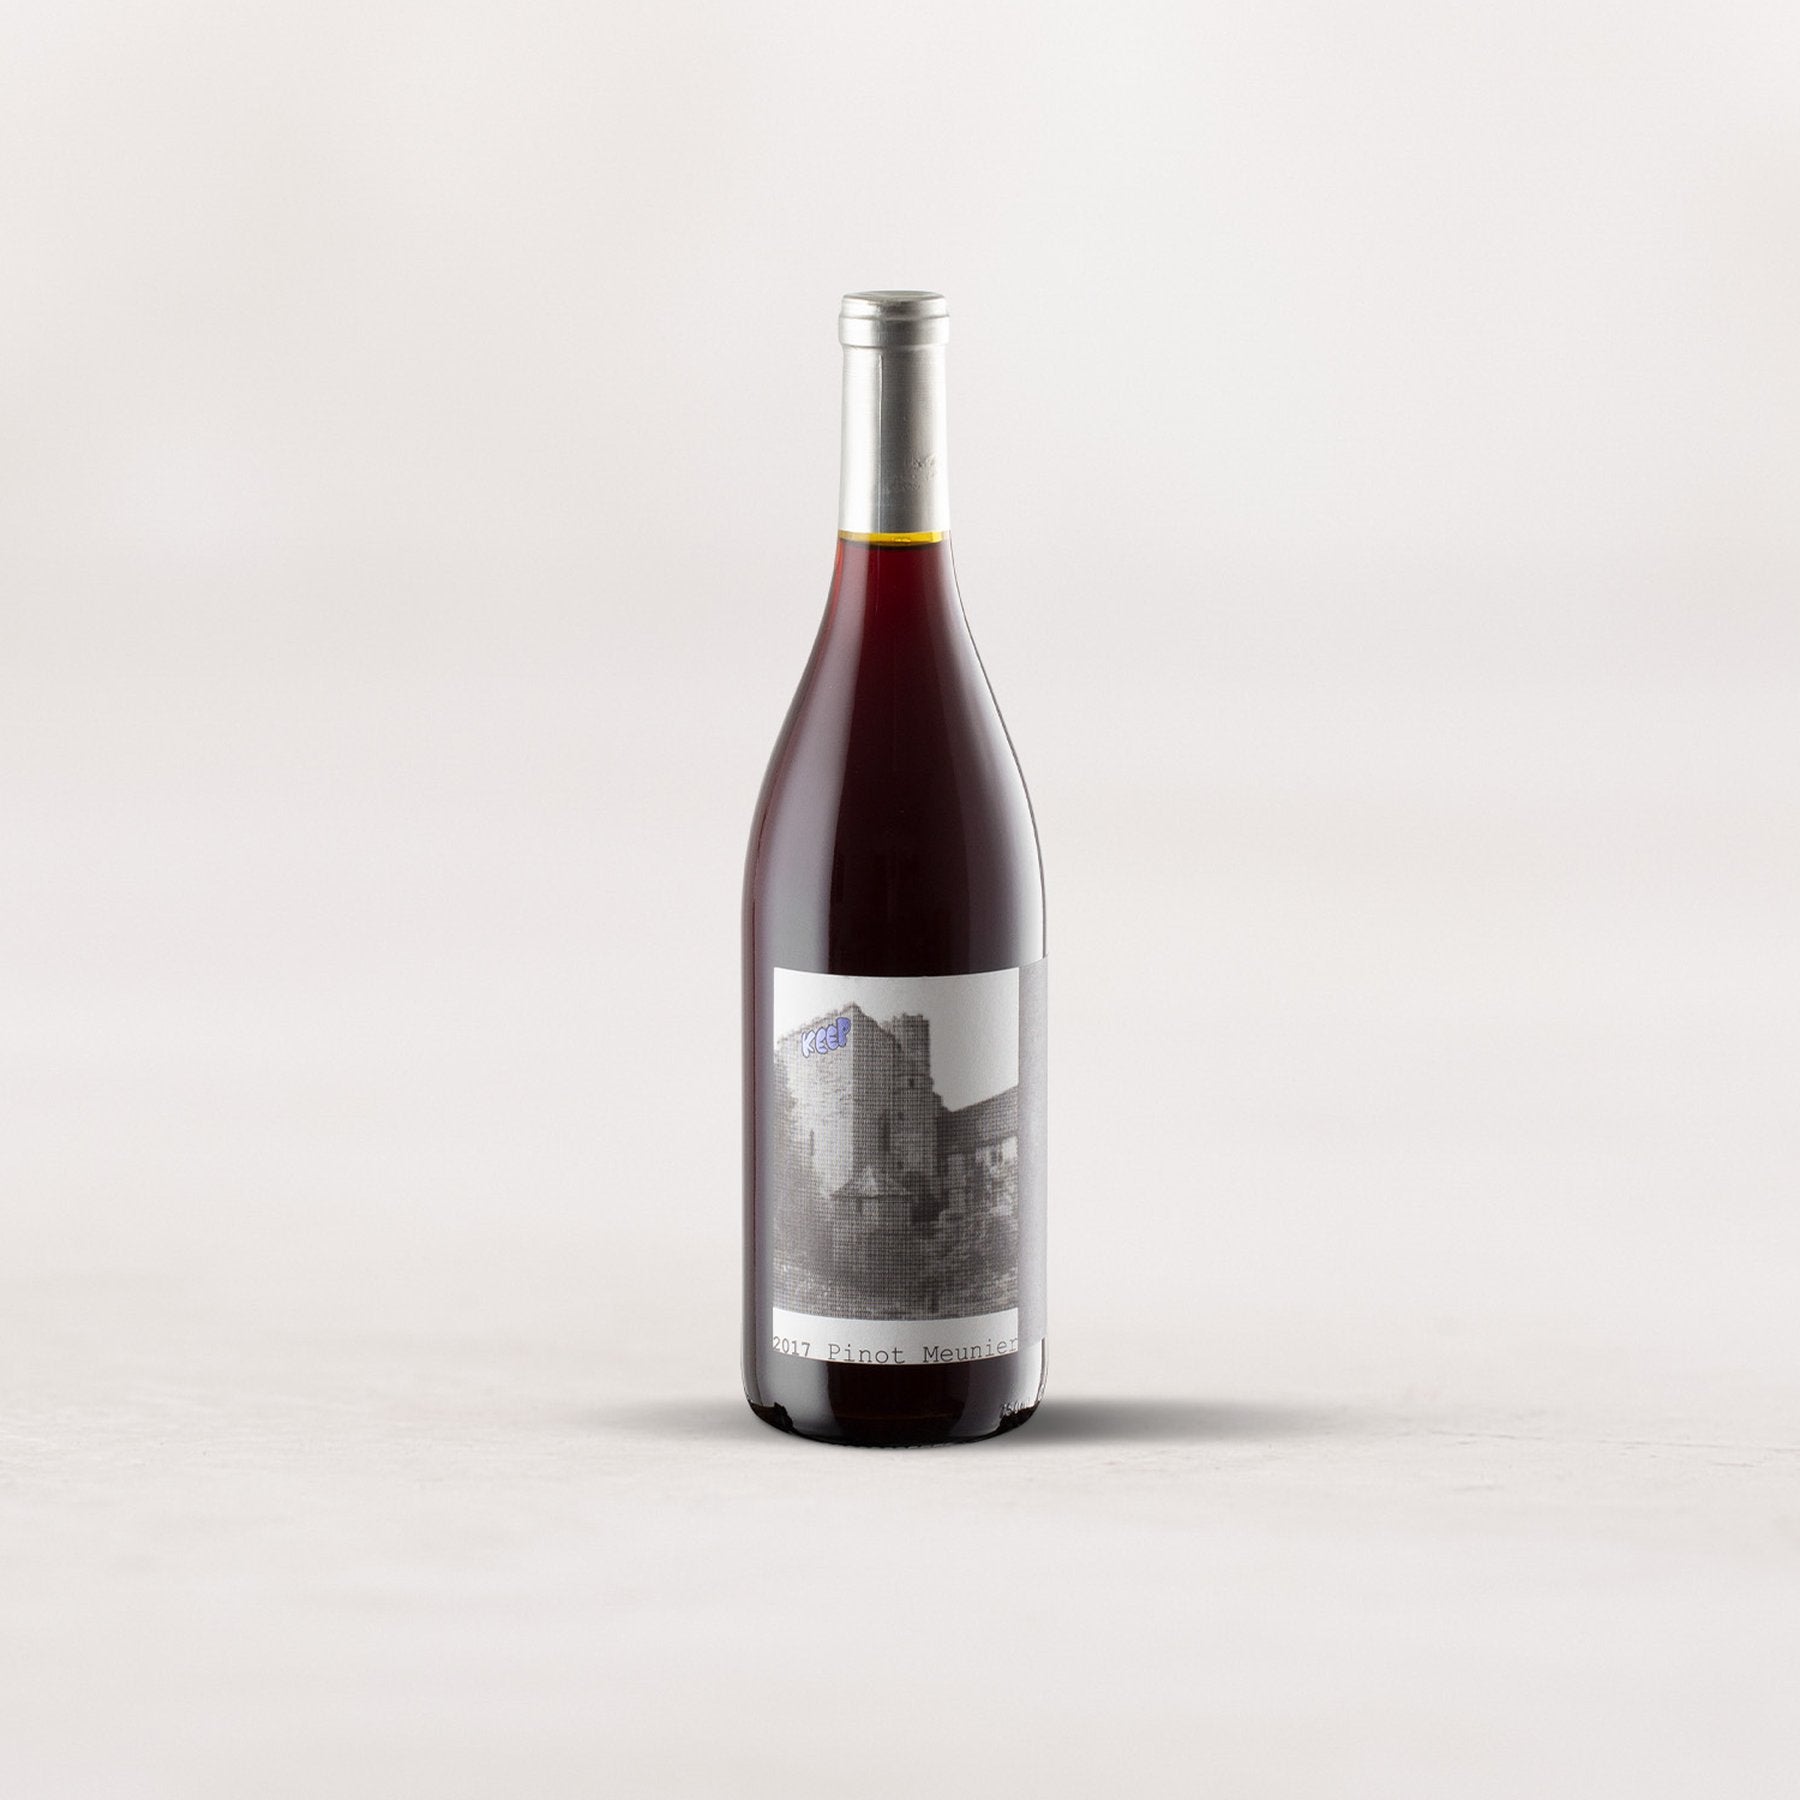 KEEP, “Yount Mill Vineyard” Pinot Meunier